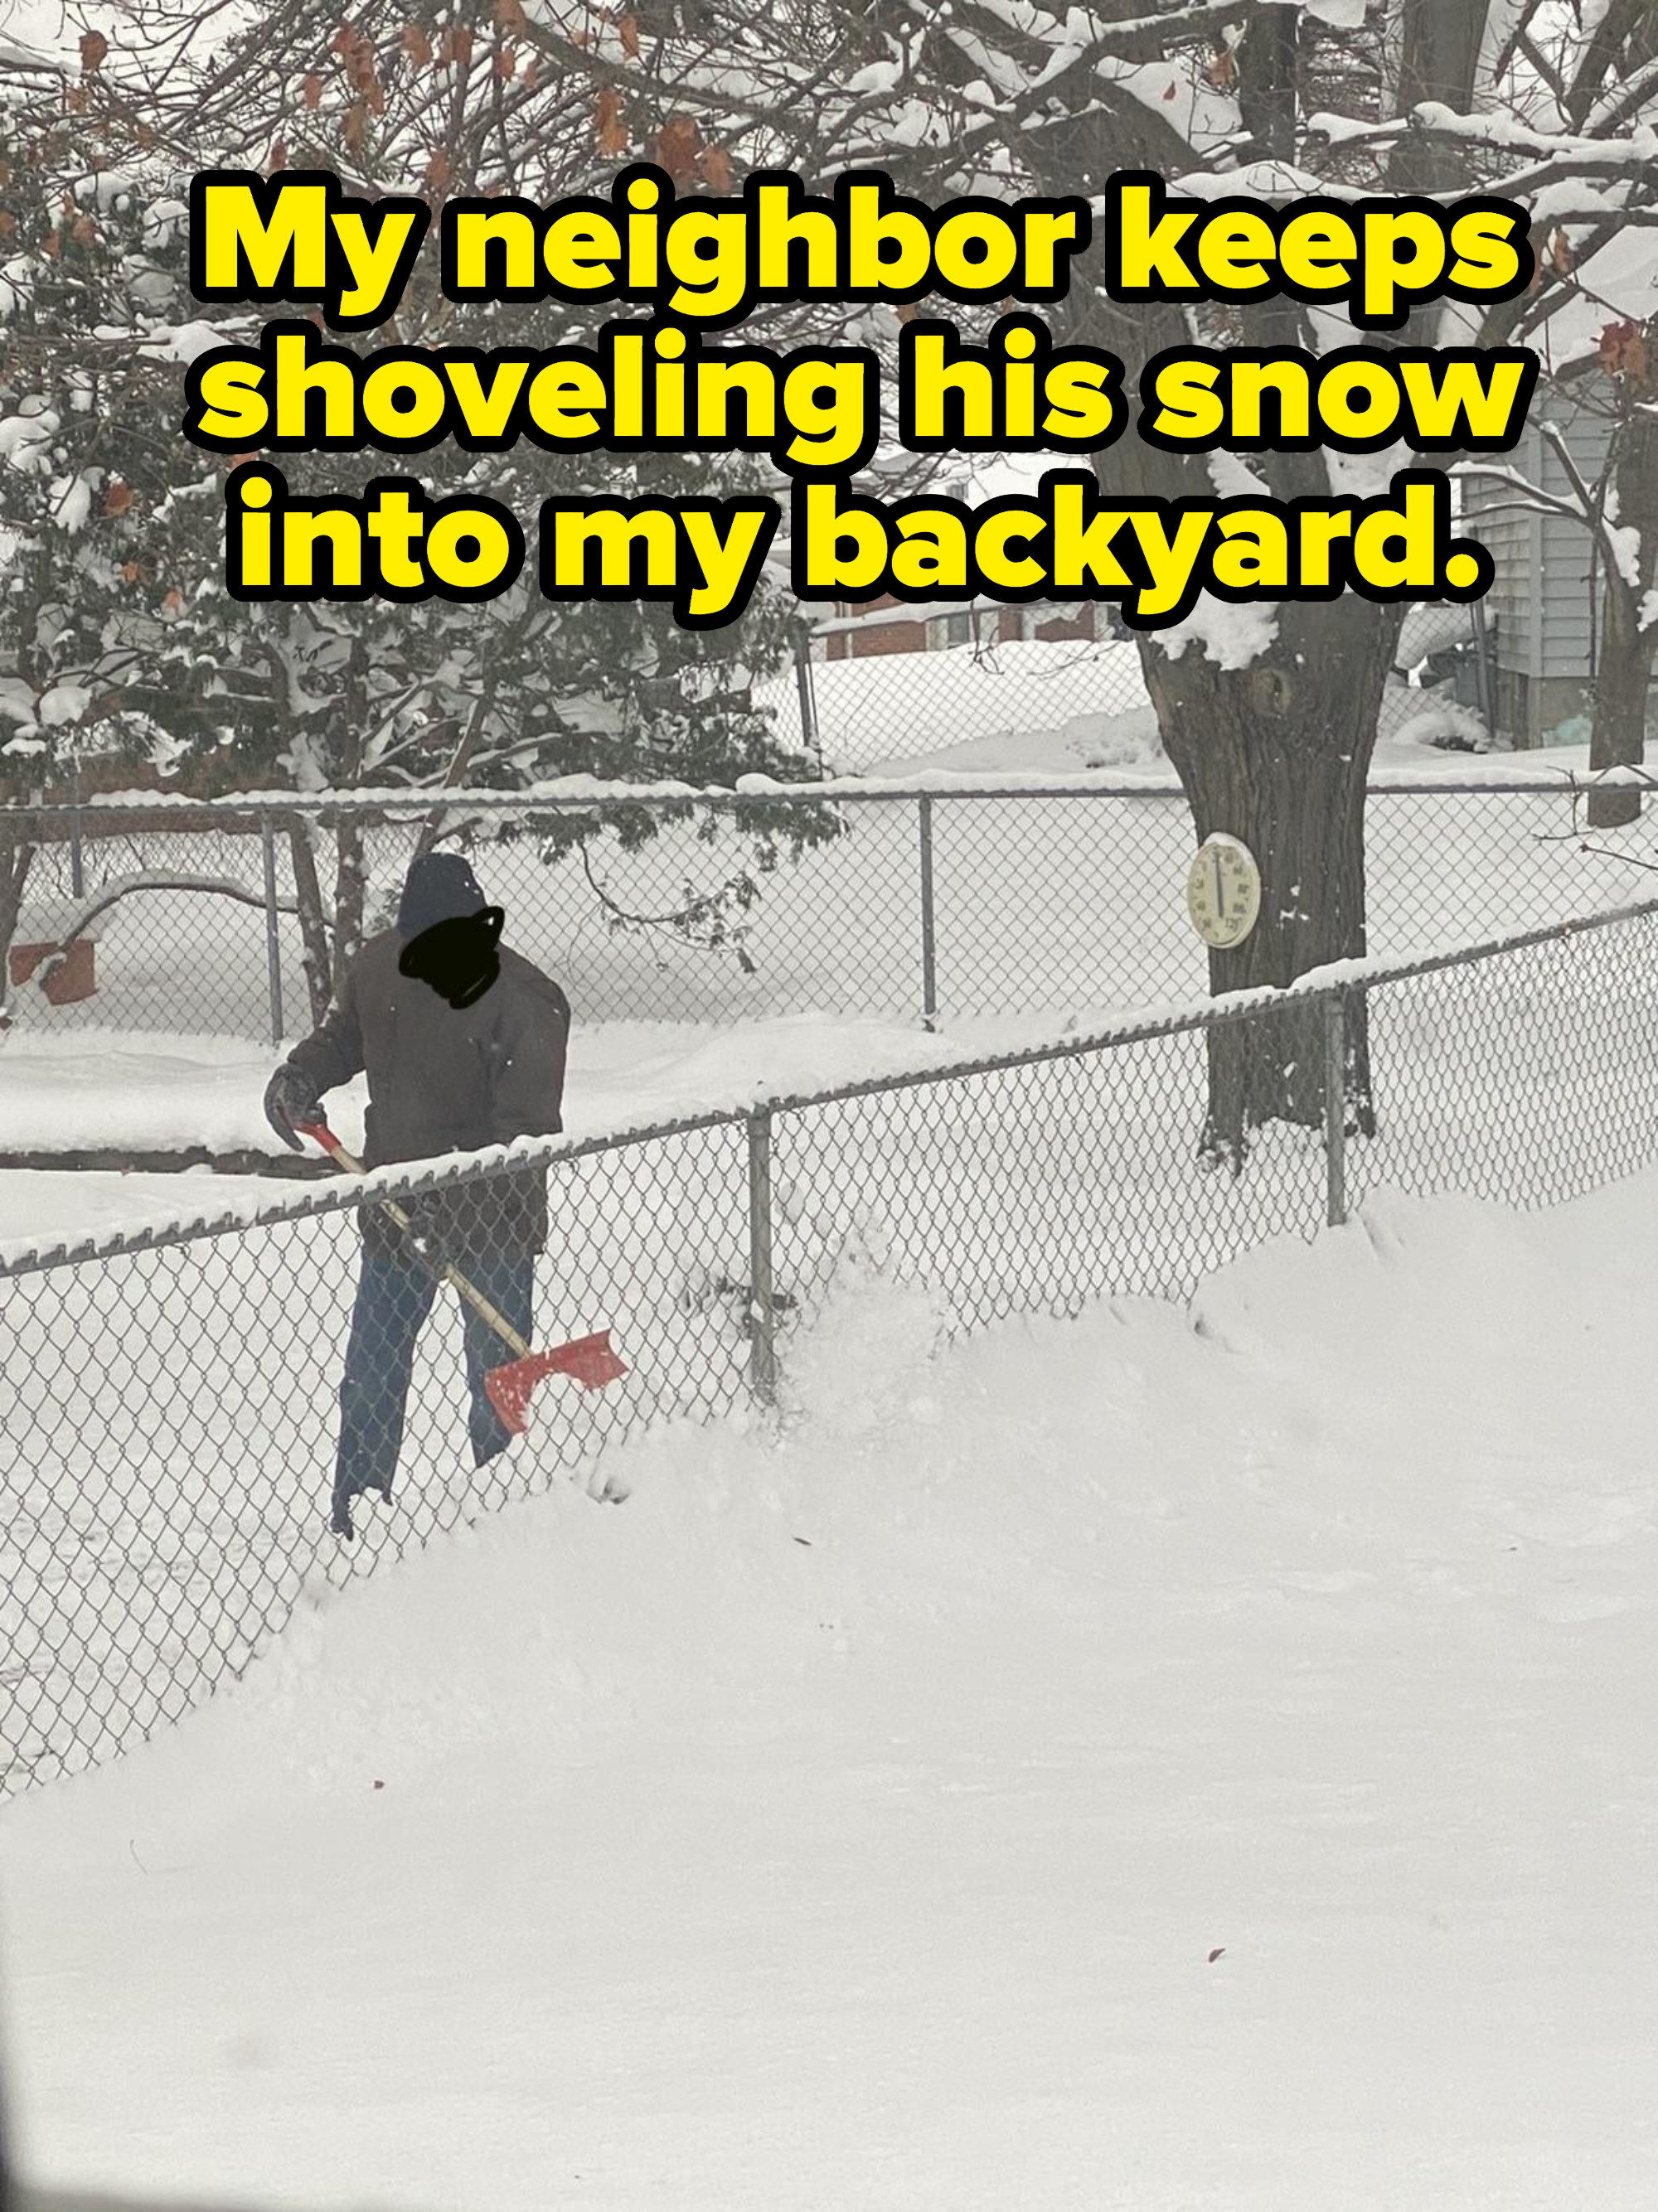 Person shoveling snow through a fence